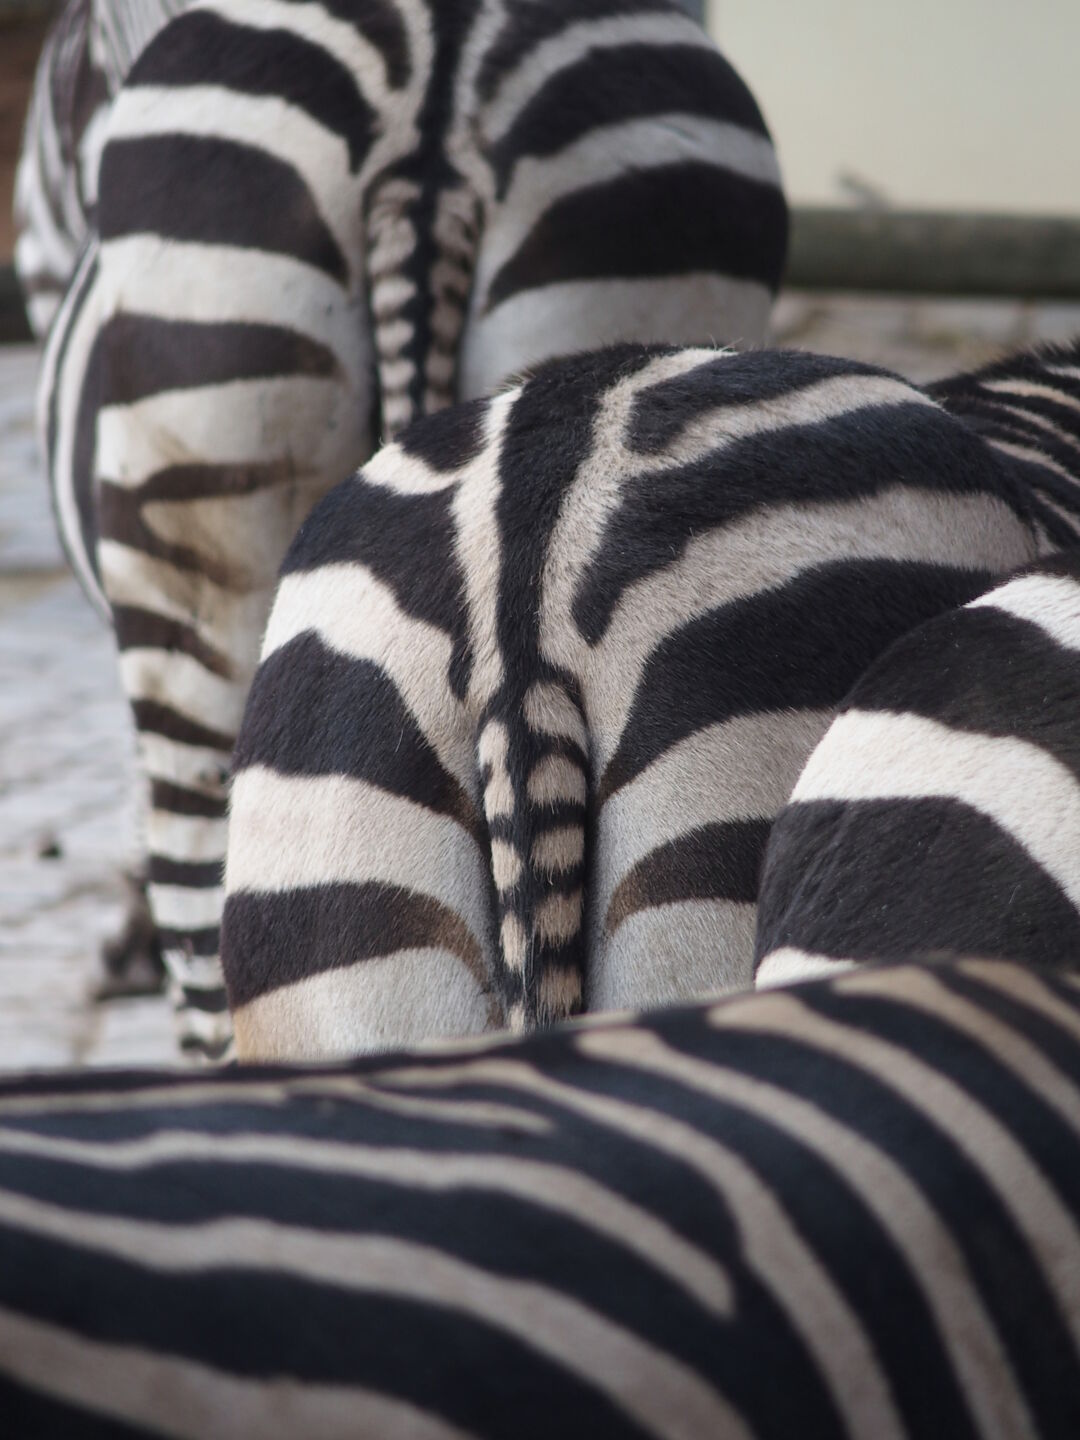 Die Zebras zeigen sich von ihrer besten Seite.